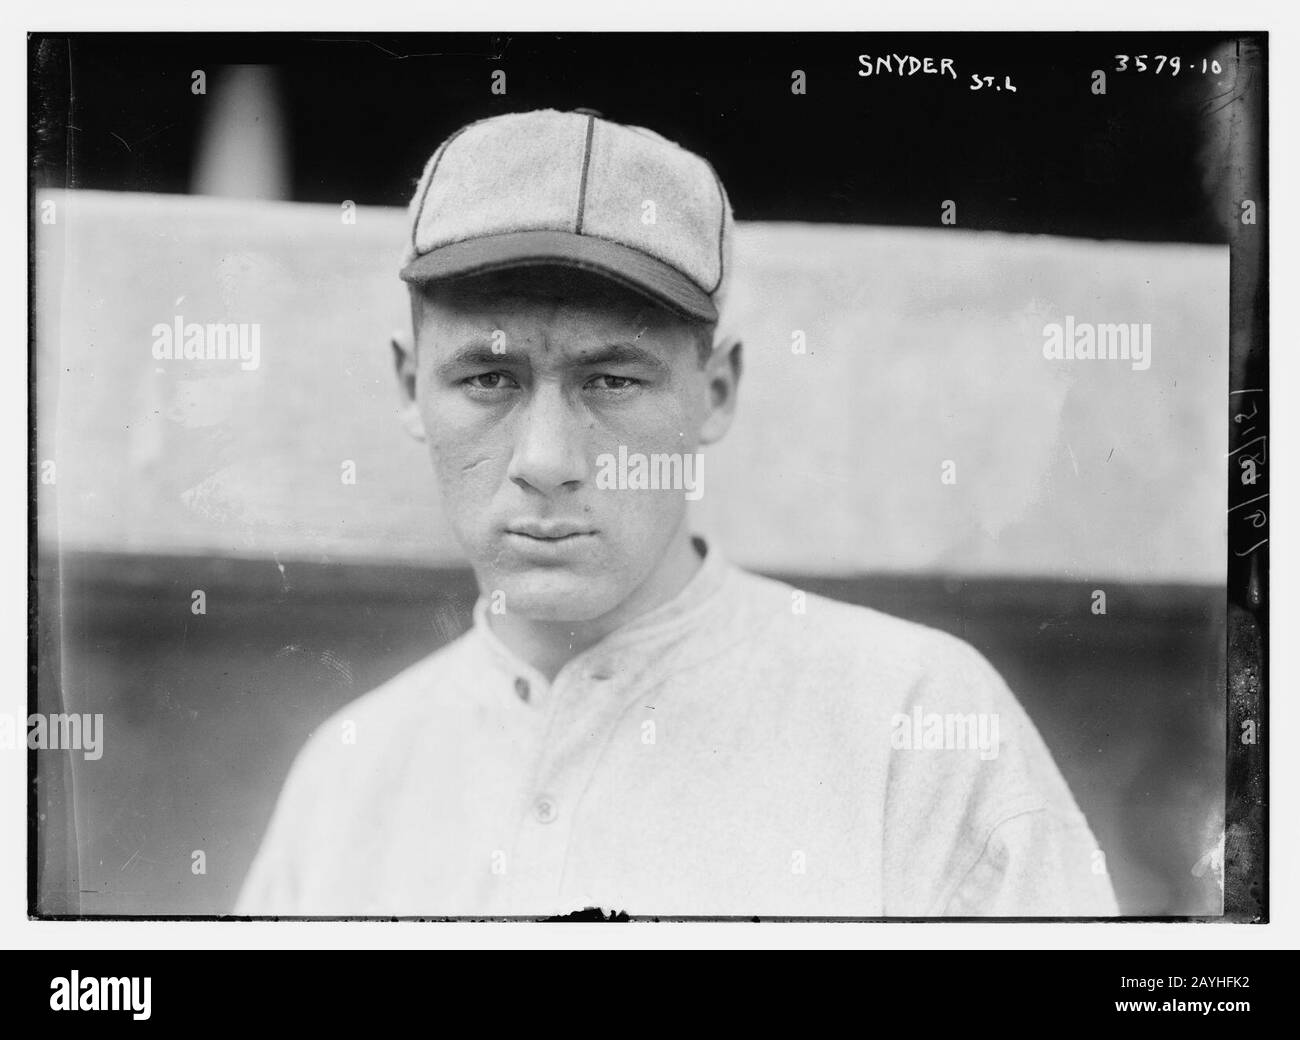 Frank Snyder, St. Louis NL (baseball) Stock Photo